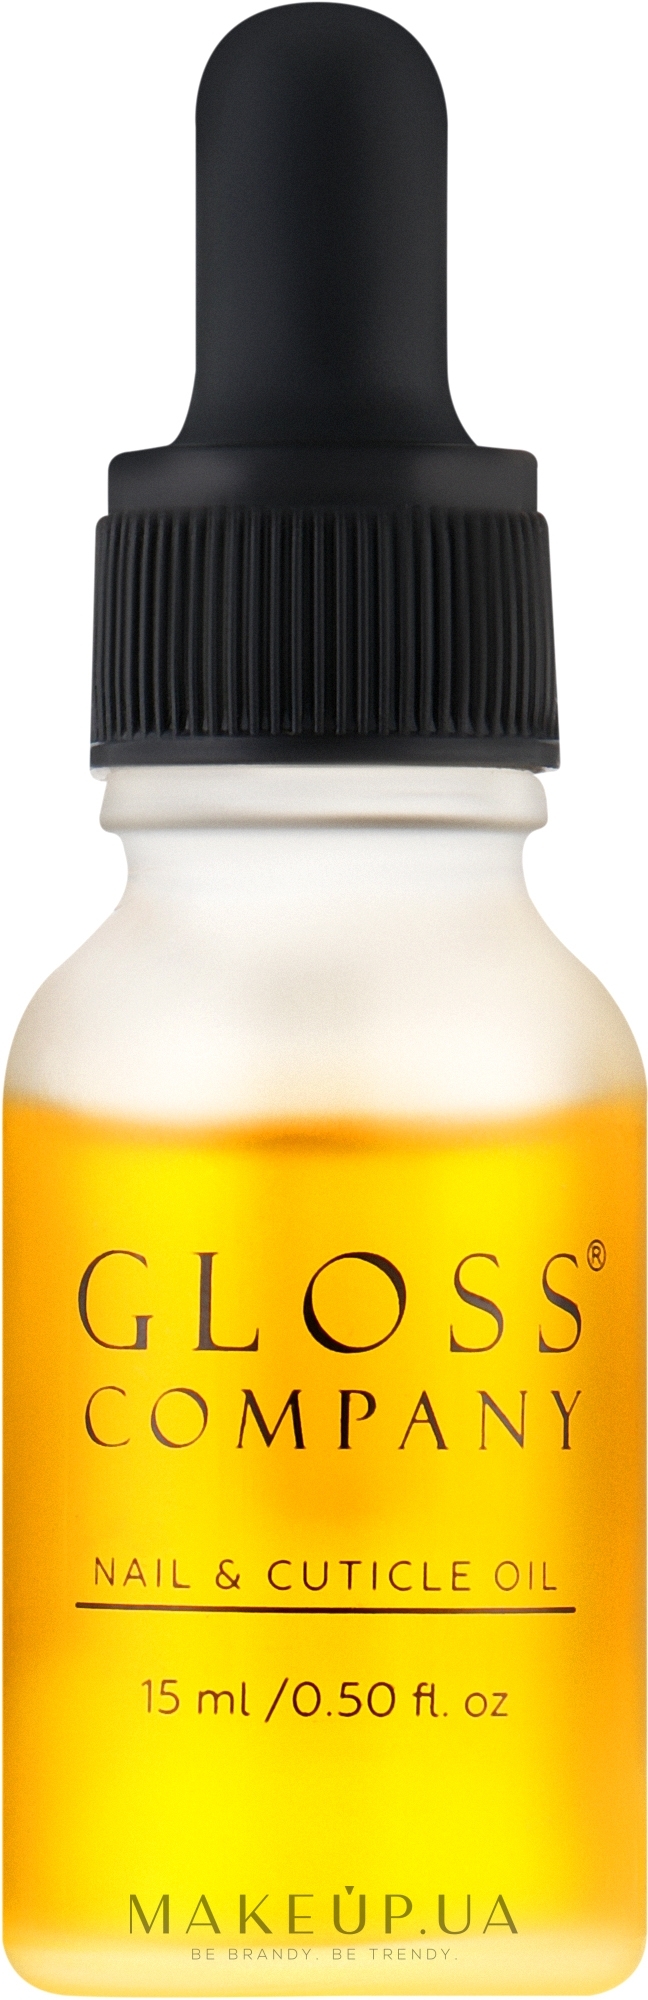 Олійка для нігтів та кутикули - Gloss Company Musk Rose Nail & Cuticle Oil — фото 15ml